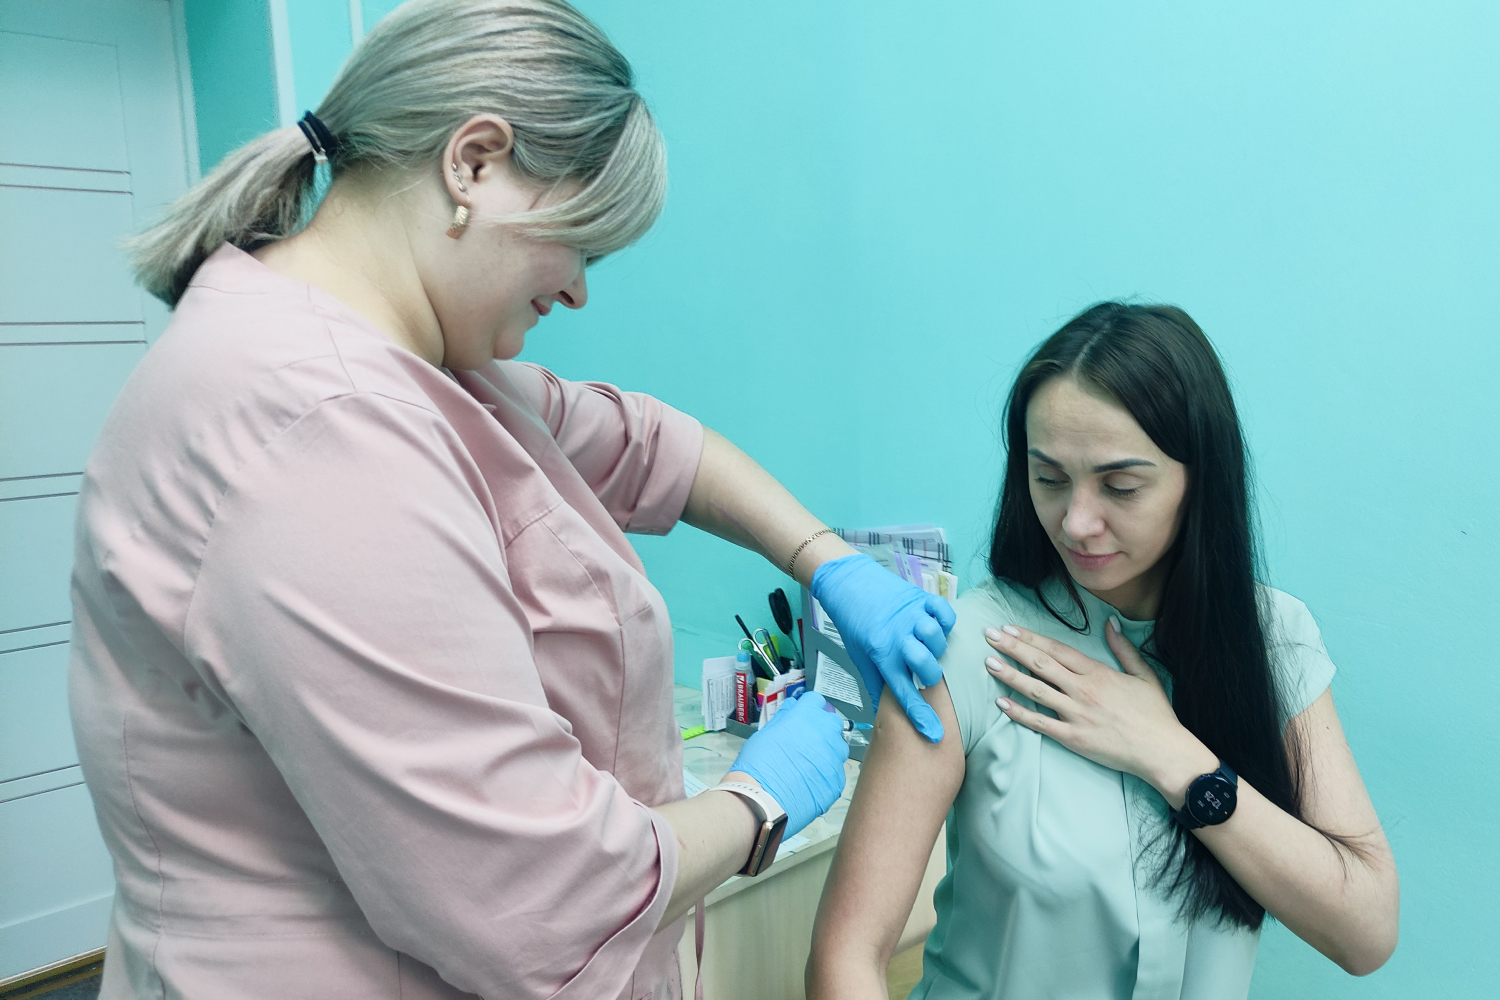 На разрезе Пермяковский идет бесплатная вакцинация против клещевого энцефалита. Стройсервис